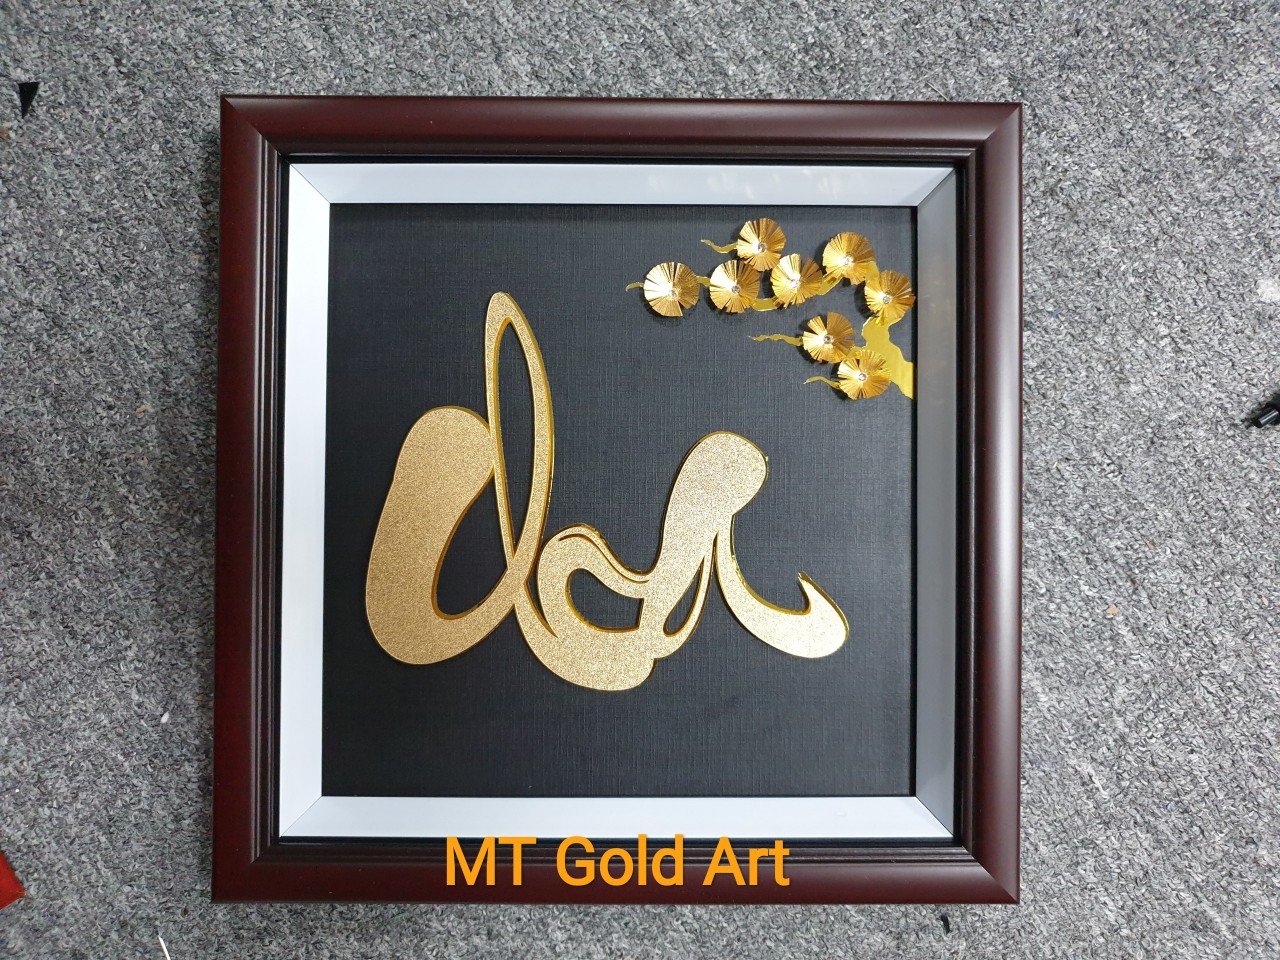 tranh chữ cha dát vàng 24k(30x30cm) MT Gold Art- Hàng chính hãng, trang trí nhà cửa, phòng làm việc, quà tặng cha, sếp, đối tác, khách hàng, tân gia, khai trương 